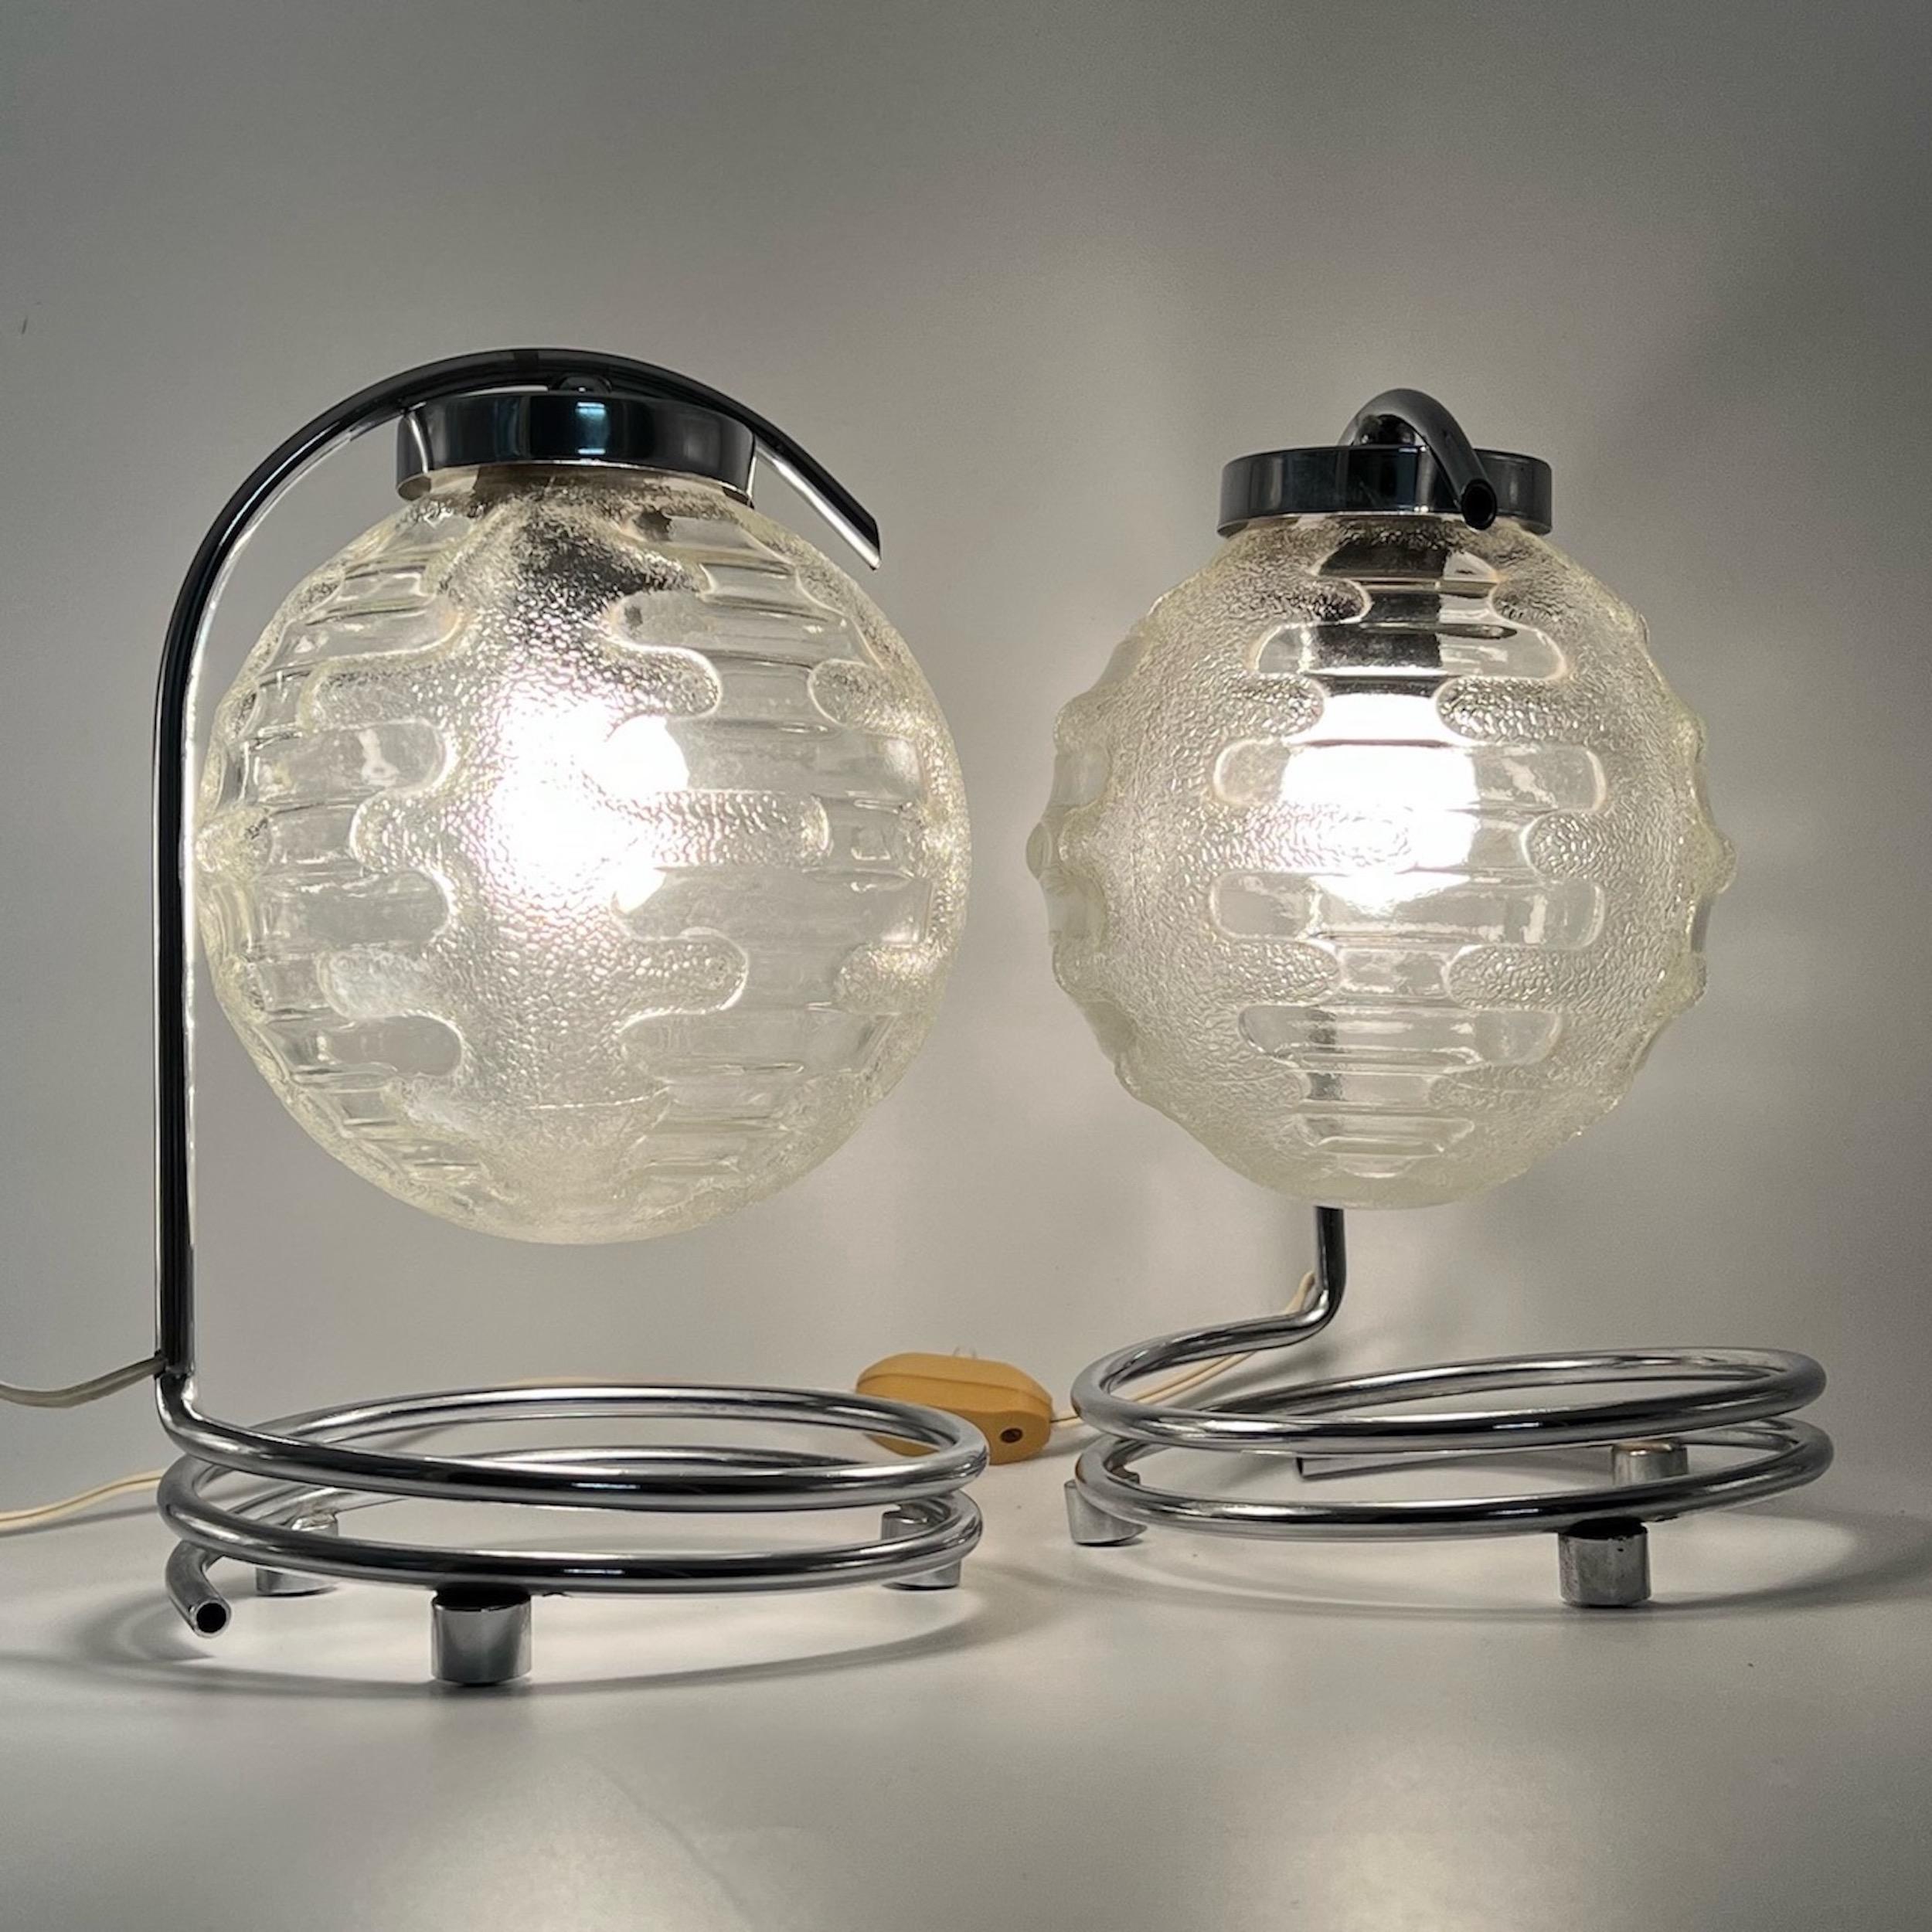 Magnifique paire de lampes de bureau ou de chevet des années 70 par Richard Essig.

La base est magistralement conçue avec des spyrales en métal chromé, et l'abat-jour est en verre épais et travaillé, pour un impact visuel magnifique.

Excellent